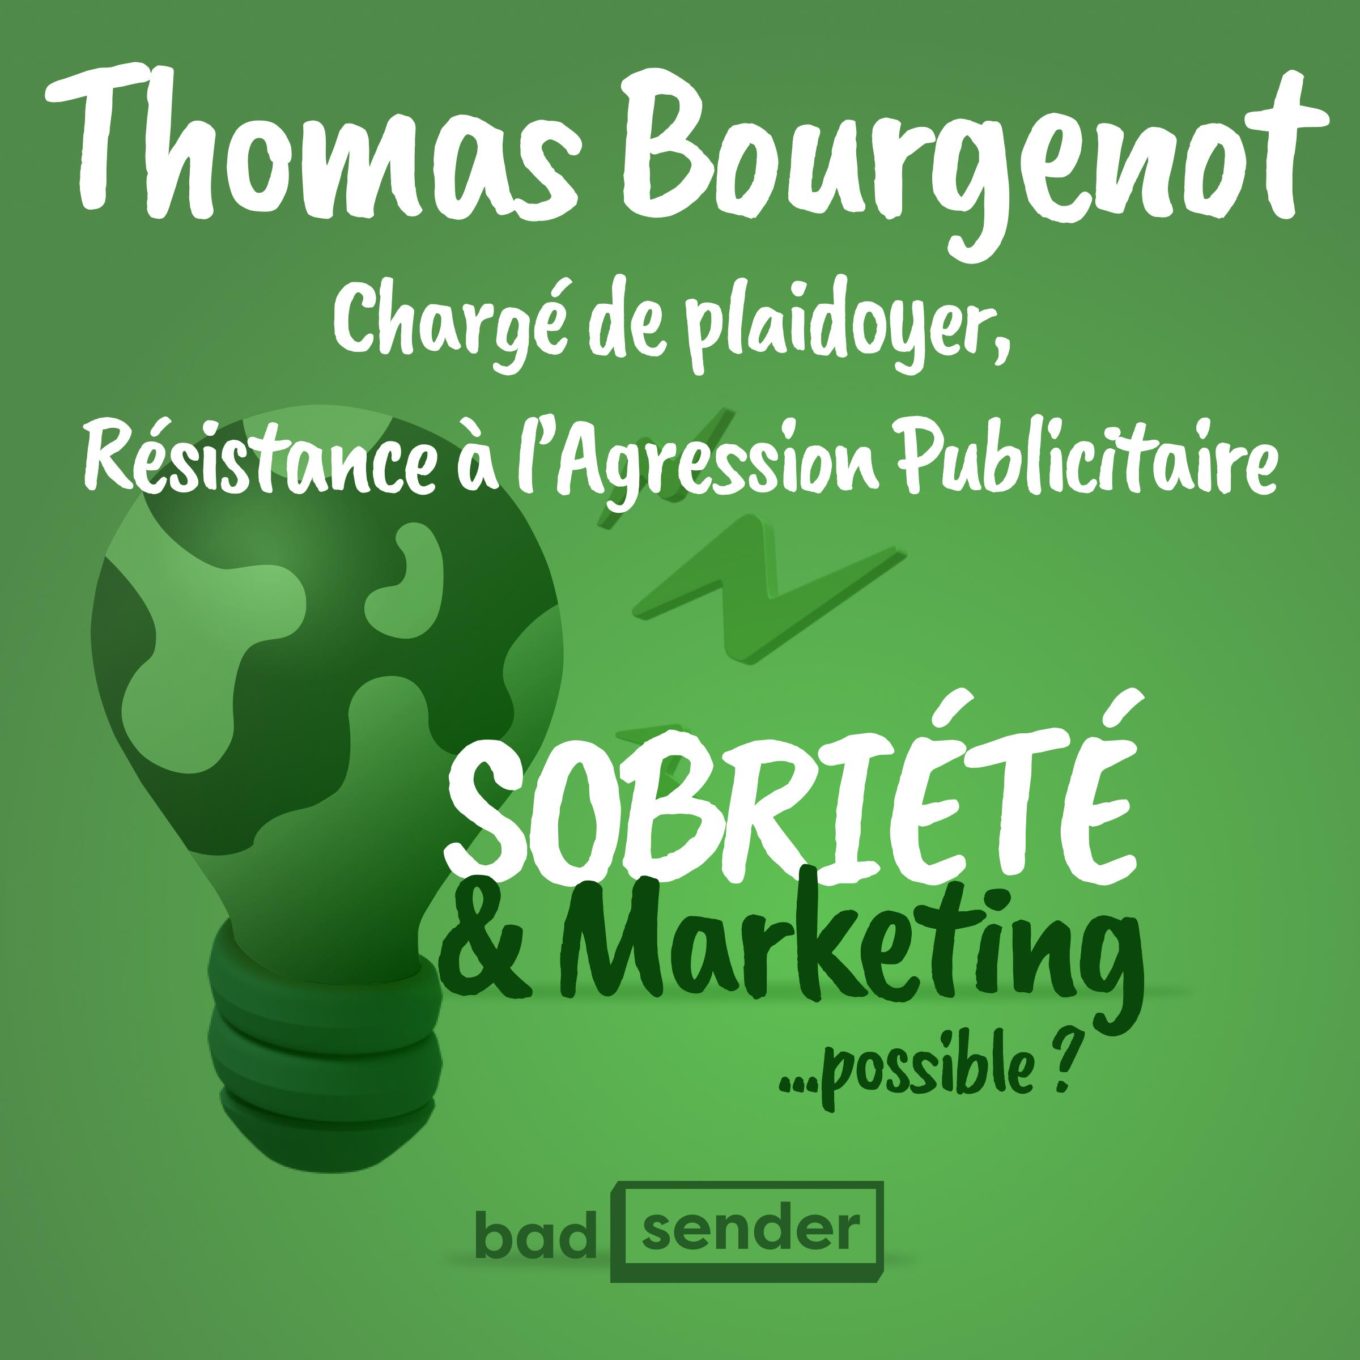 vignette du podcast Sobriété & Marketing avec Thomas Bourgenot de Résistance à l'Agression Publicitaire